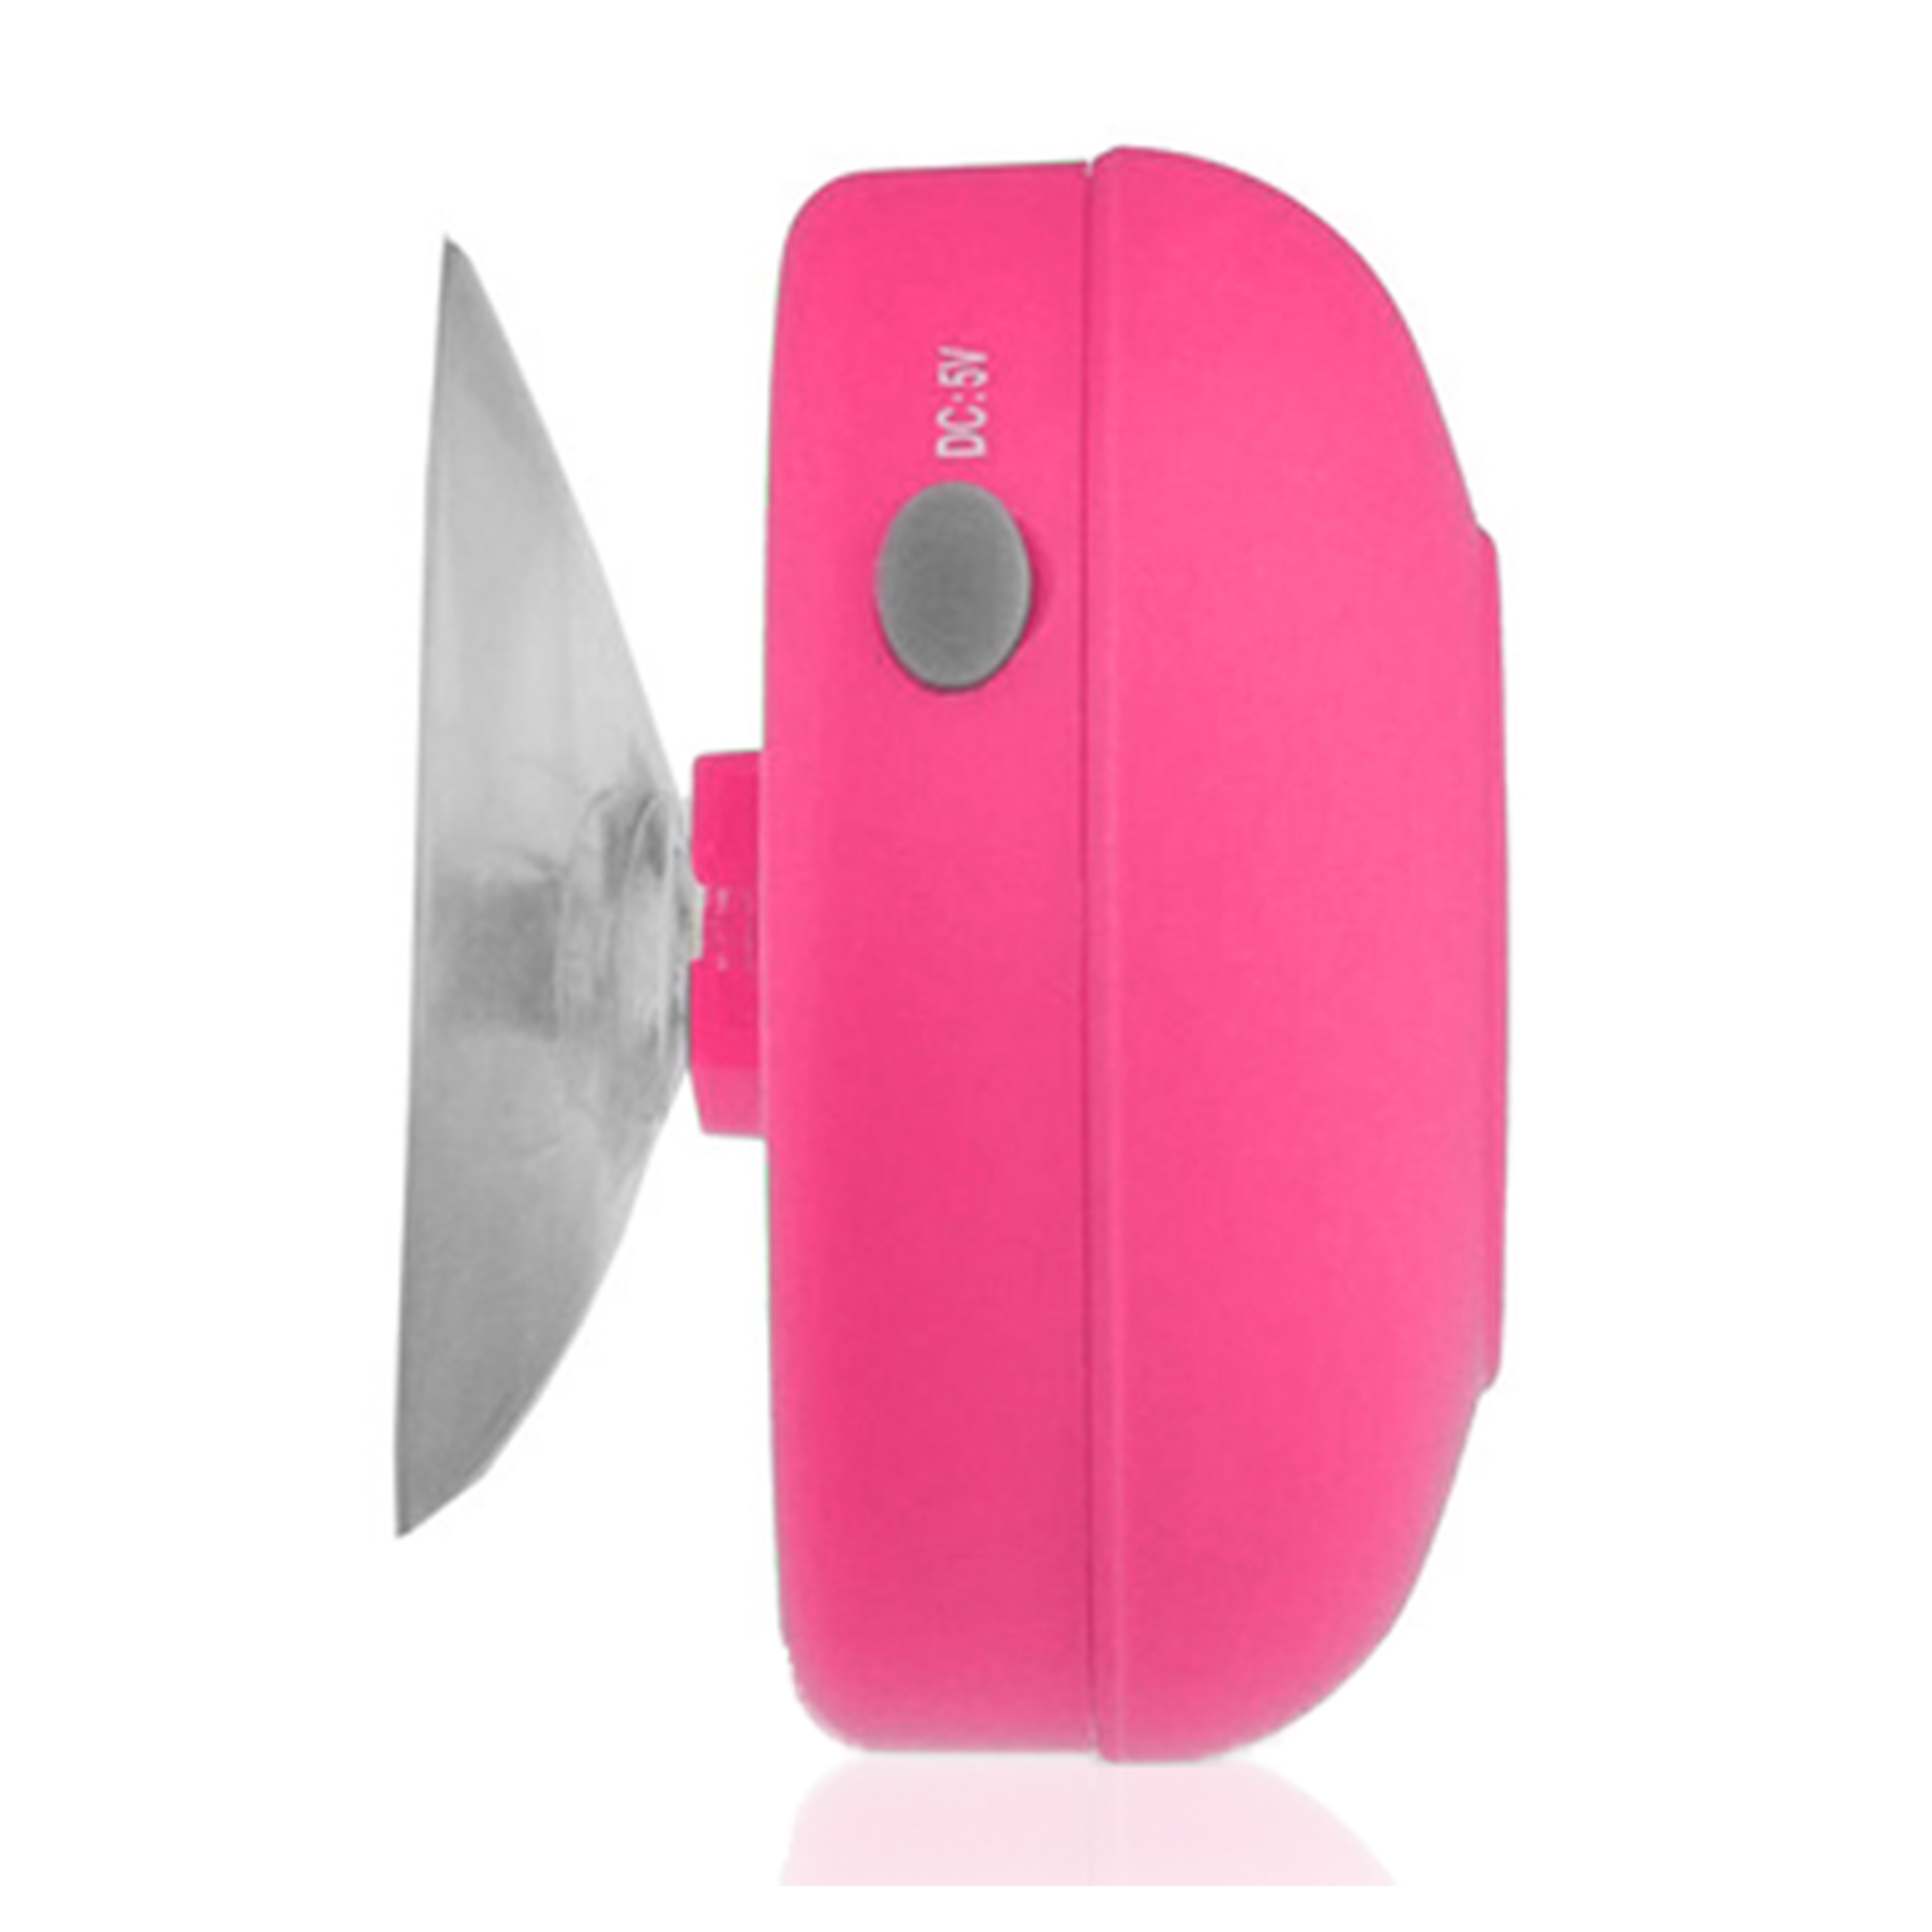 SoundBot SB510 1.59 oz Water Resistant Bluetooth Shower Speaker - Pink - image 2 of 5